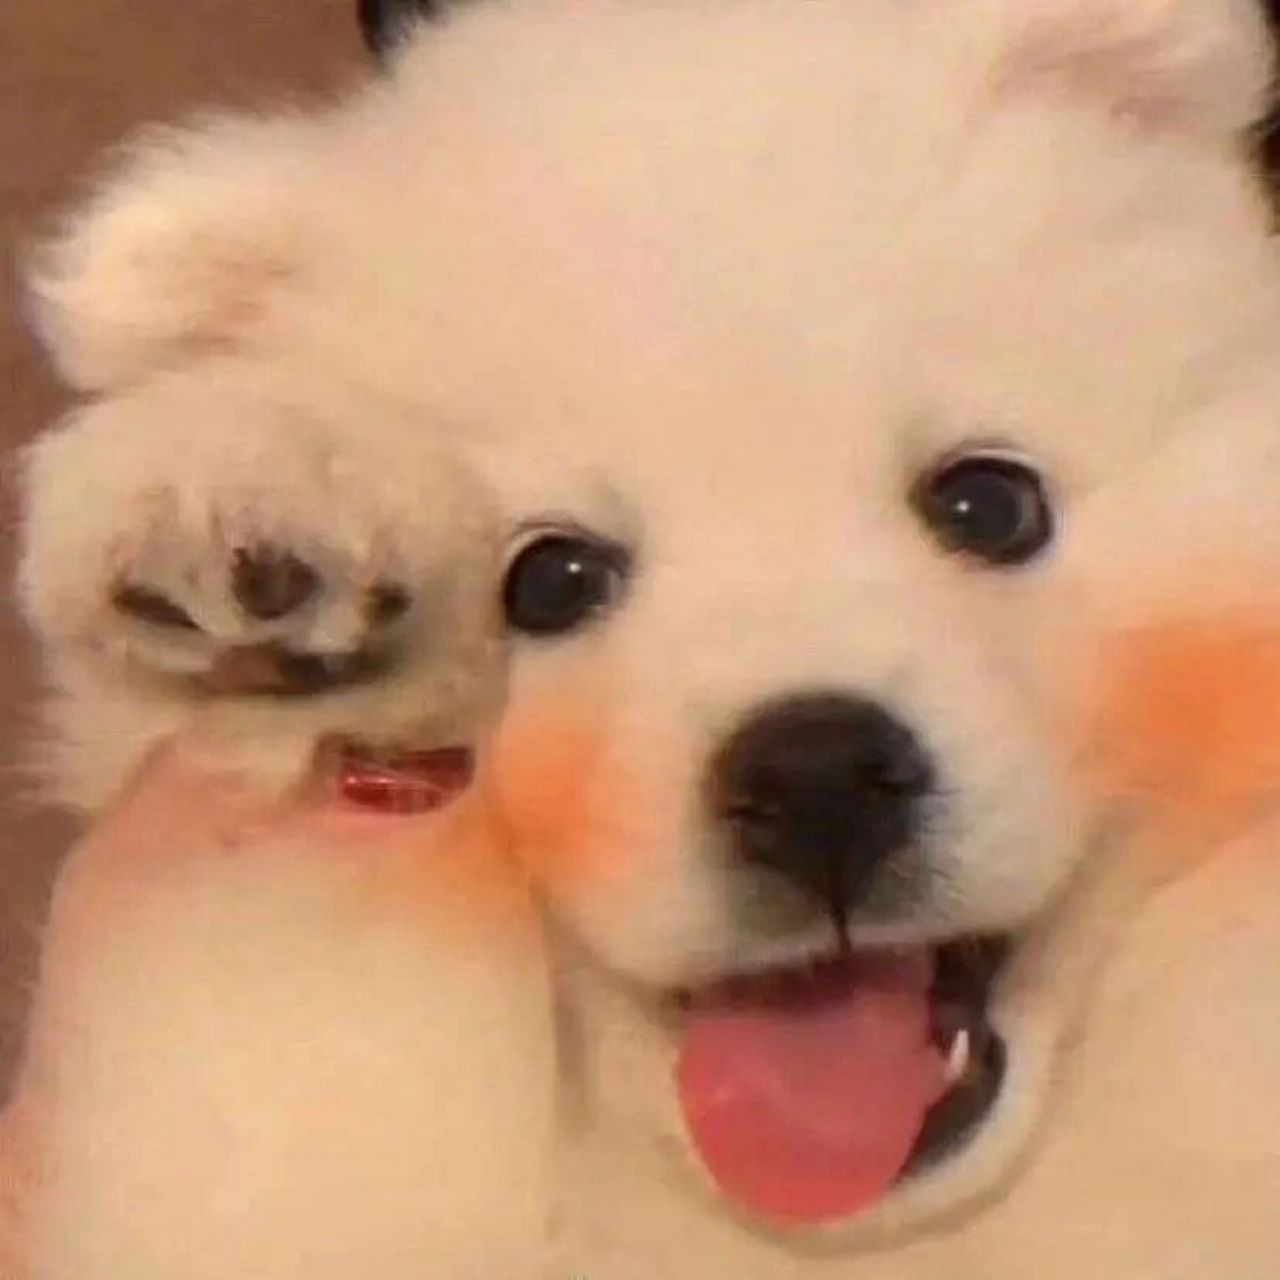 萌宠头像丨憨憨的可爱宠物头像沙雕动物头像   照片来源于微信公众号